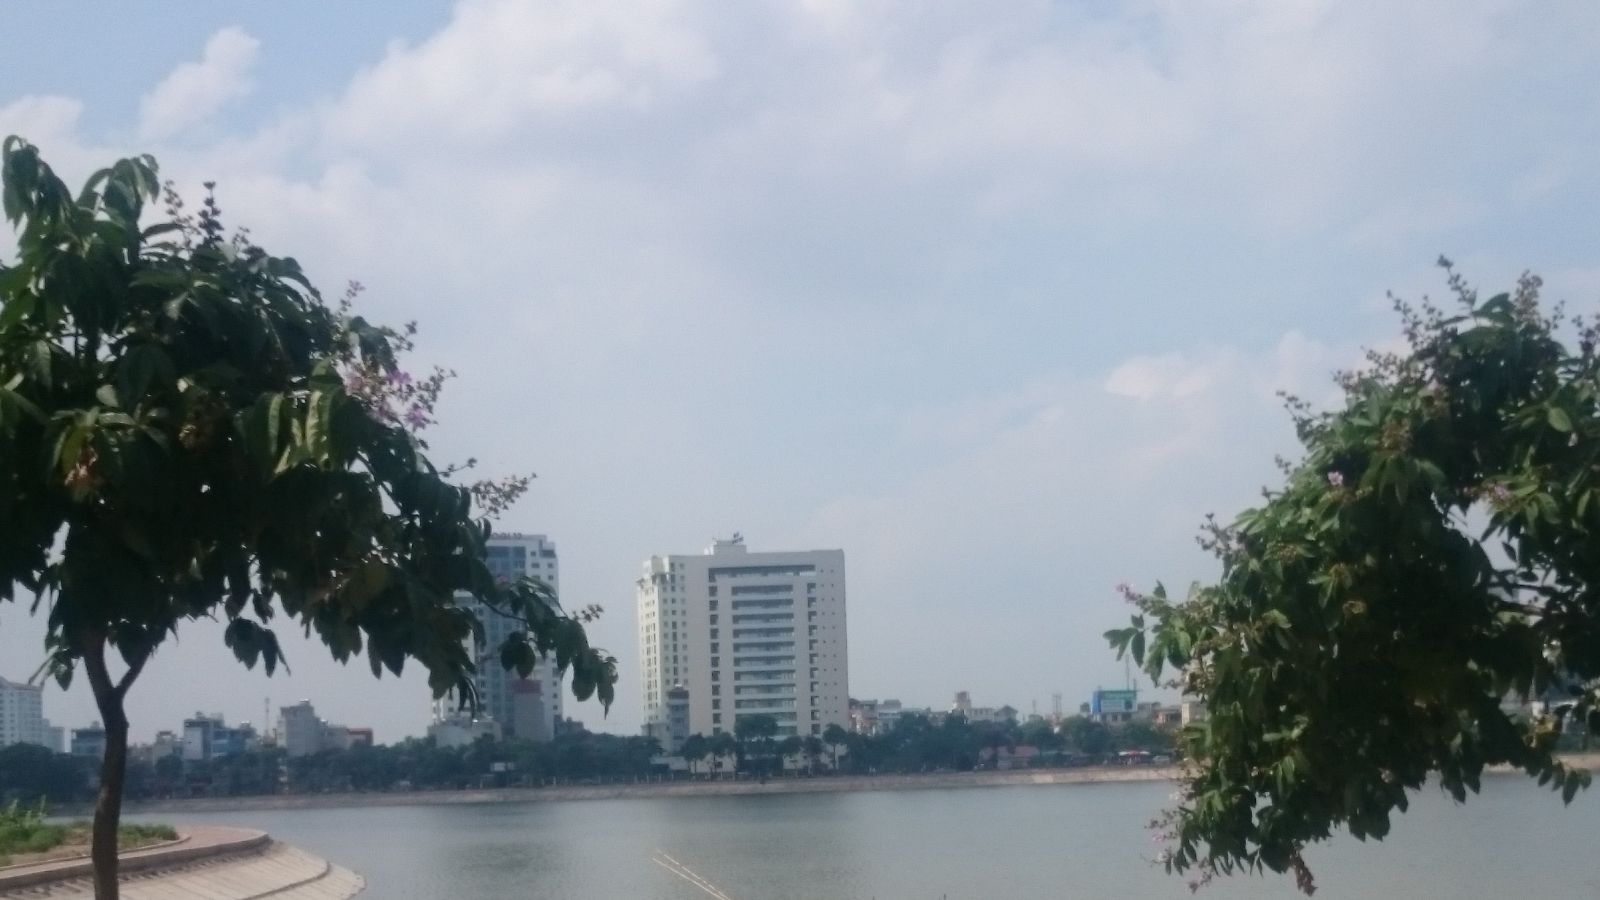 Dự án CC7 nhìn từ phía bên kia hồ Linh Đàm